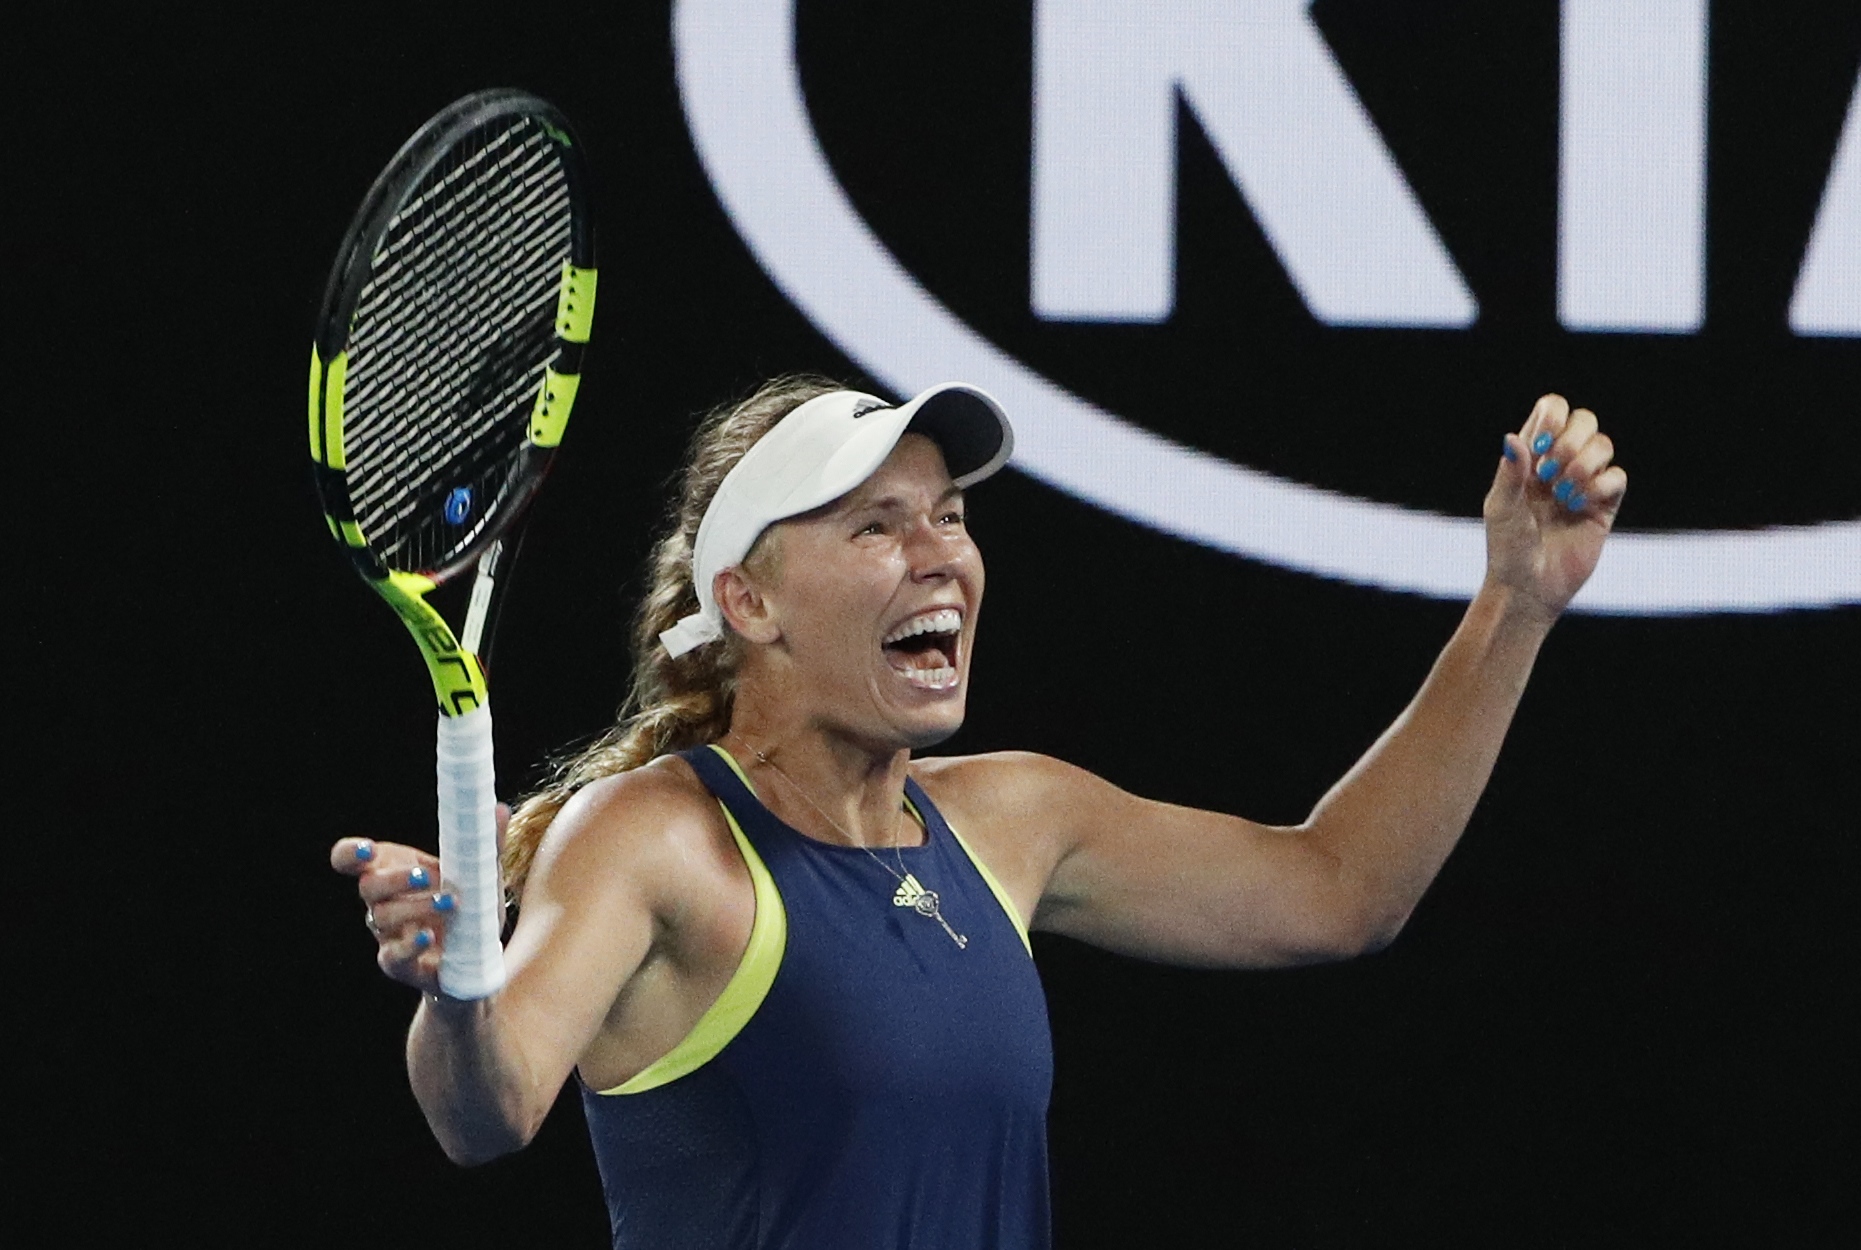 Tennis: Caroline Wozniacki beats Simona Halep to win Australian Open